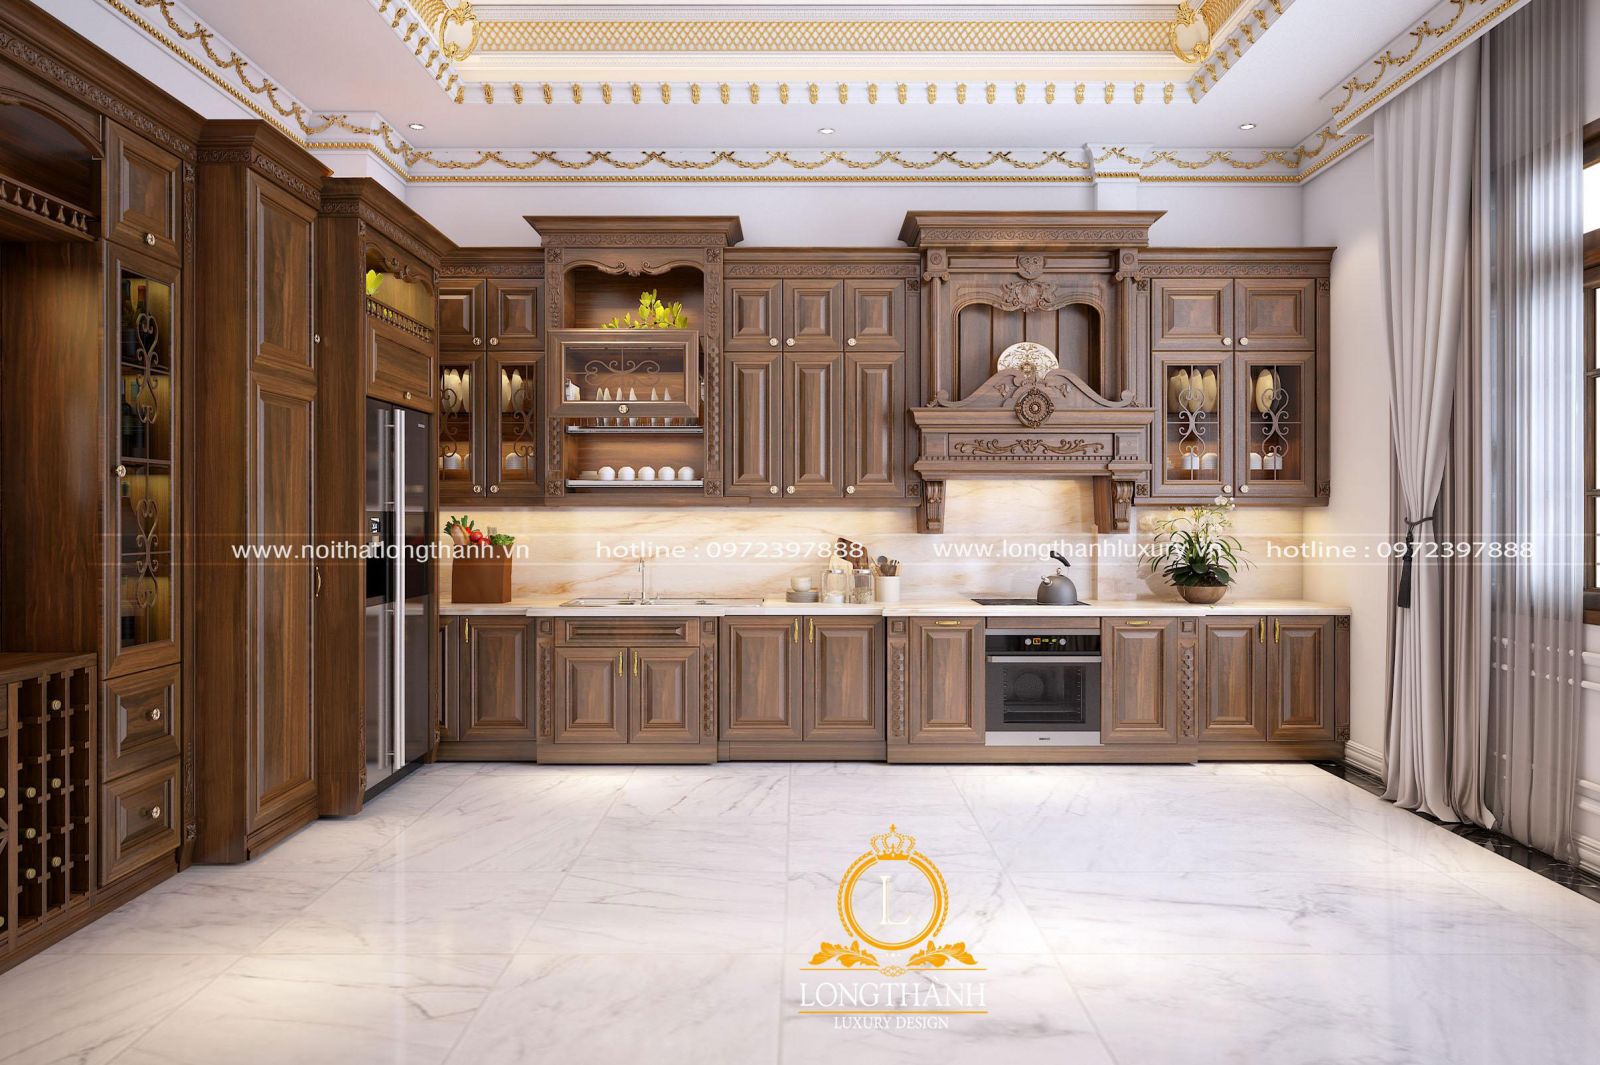 Bộ tủ bếp mang phong cách tân cổ điển vô cùng tinh tế và nổi bật trong không gian